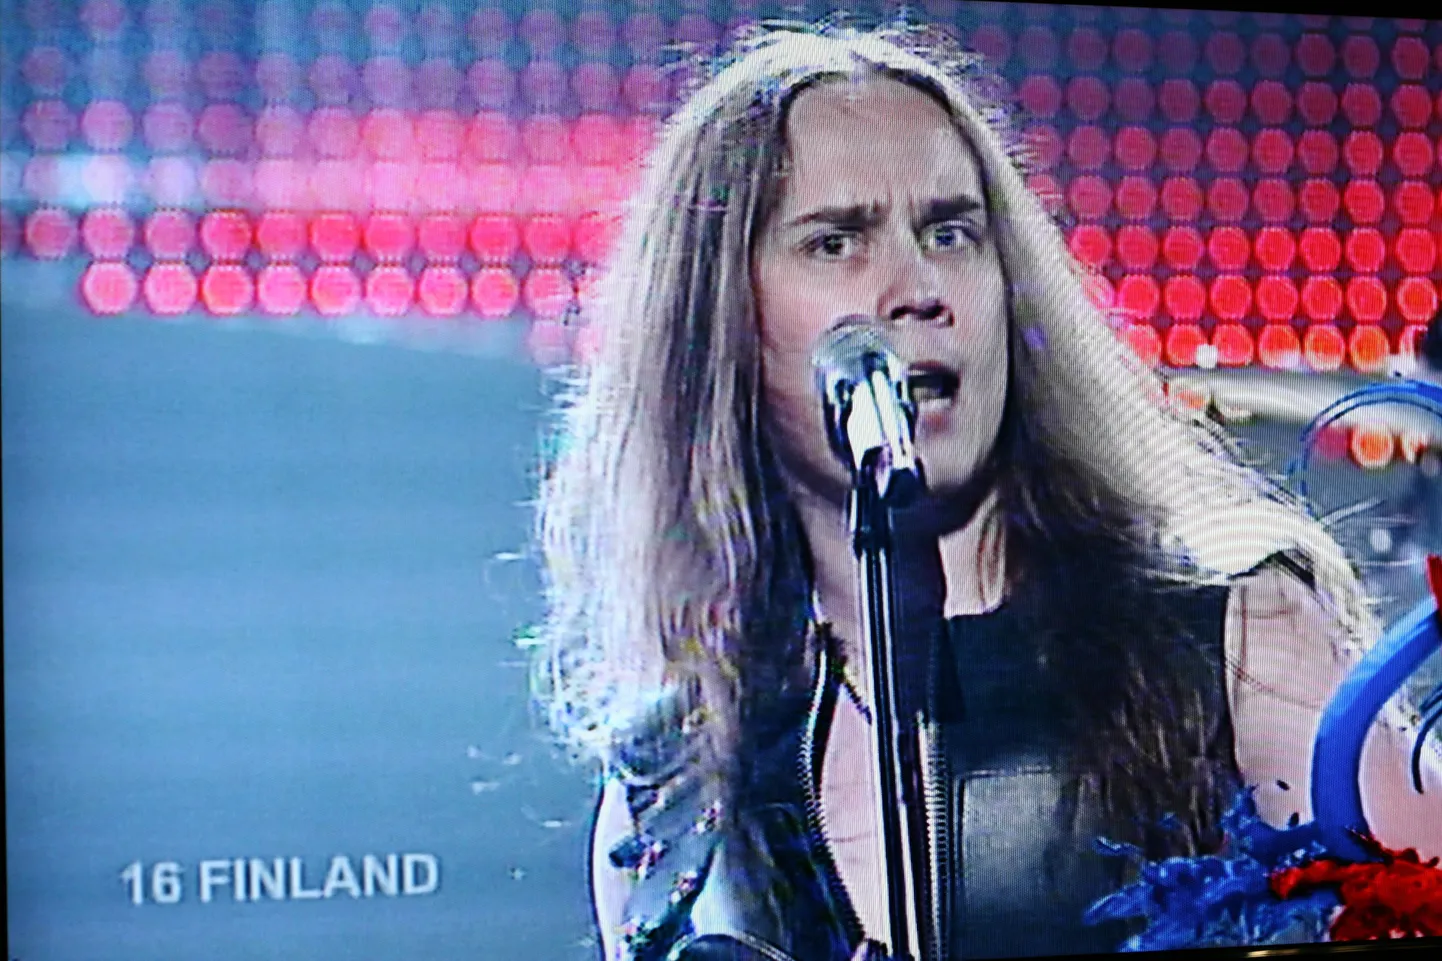 Soome proov nähtuna pressikeskuse ekraanil.